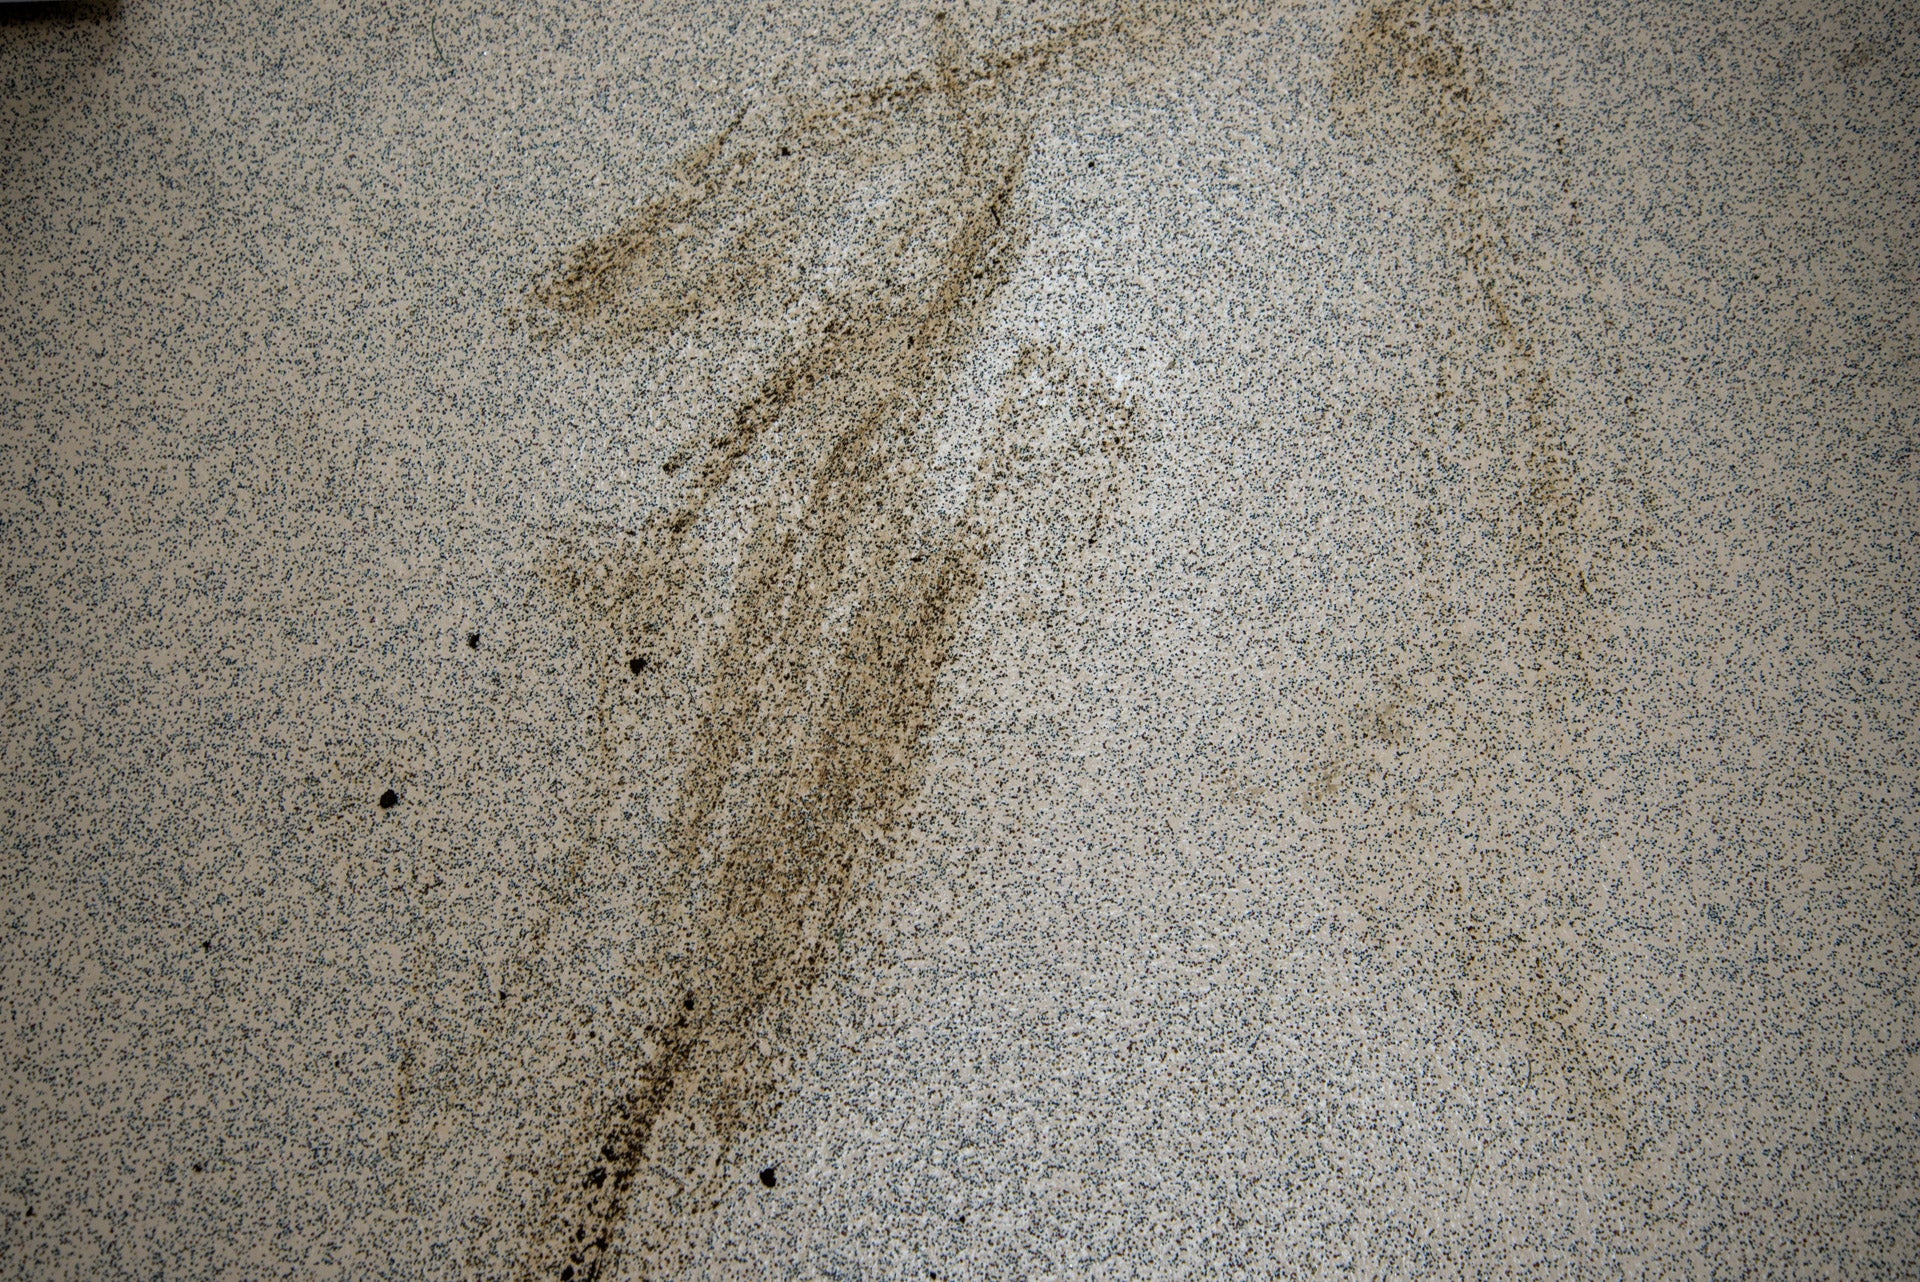 EZViz RS2 schlammiger Boden verschmutzt